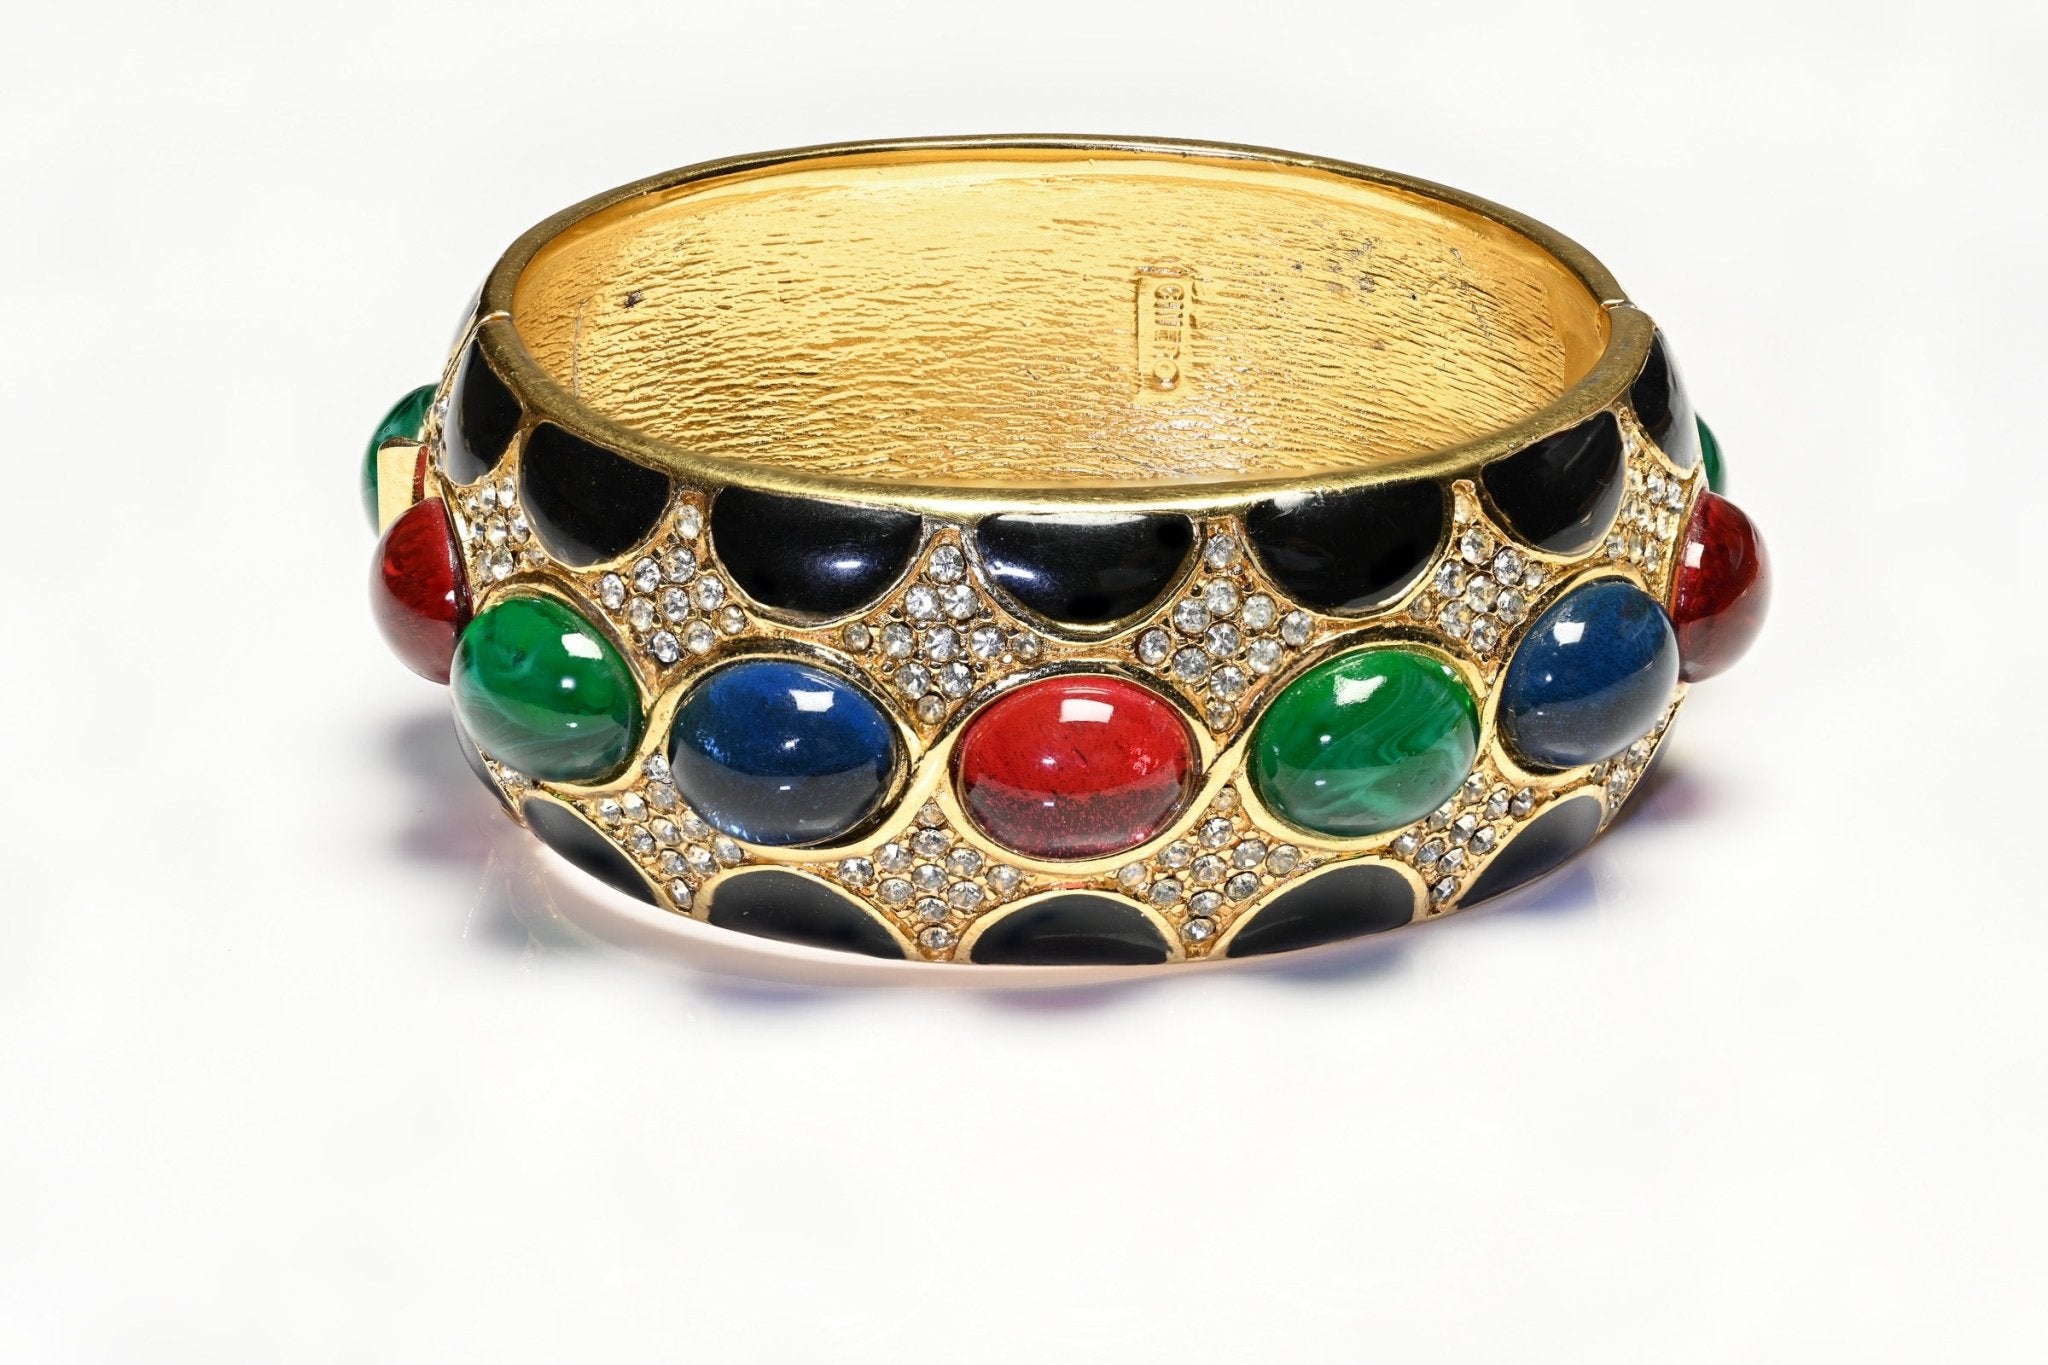 Vintage Ciner Mughal Style Enamel Red Blue Green Cabochon Glass Bangle Bracelet